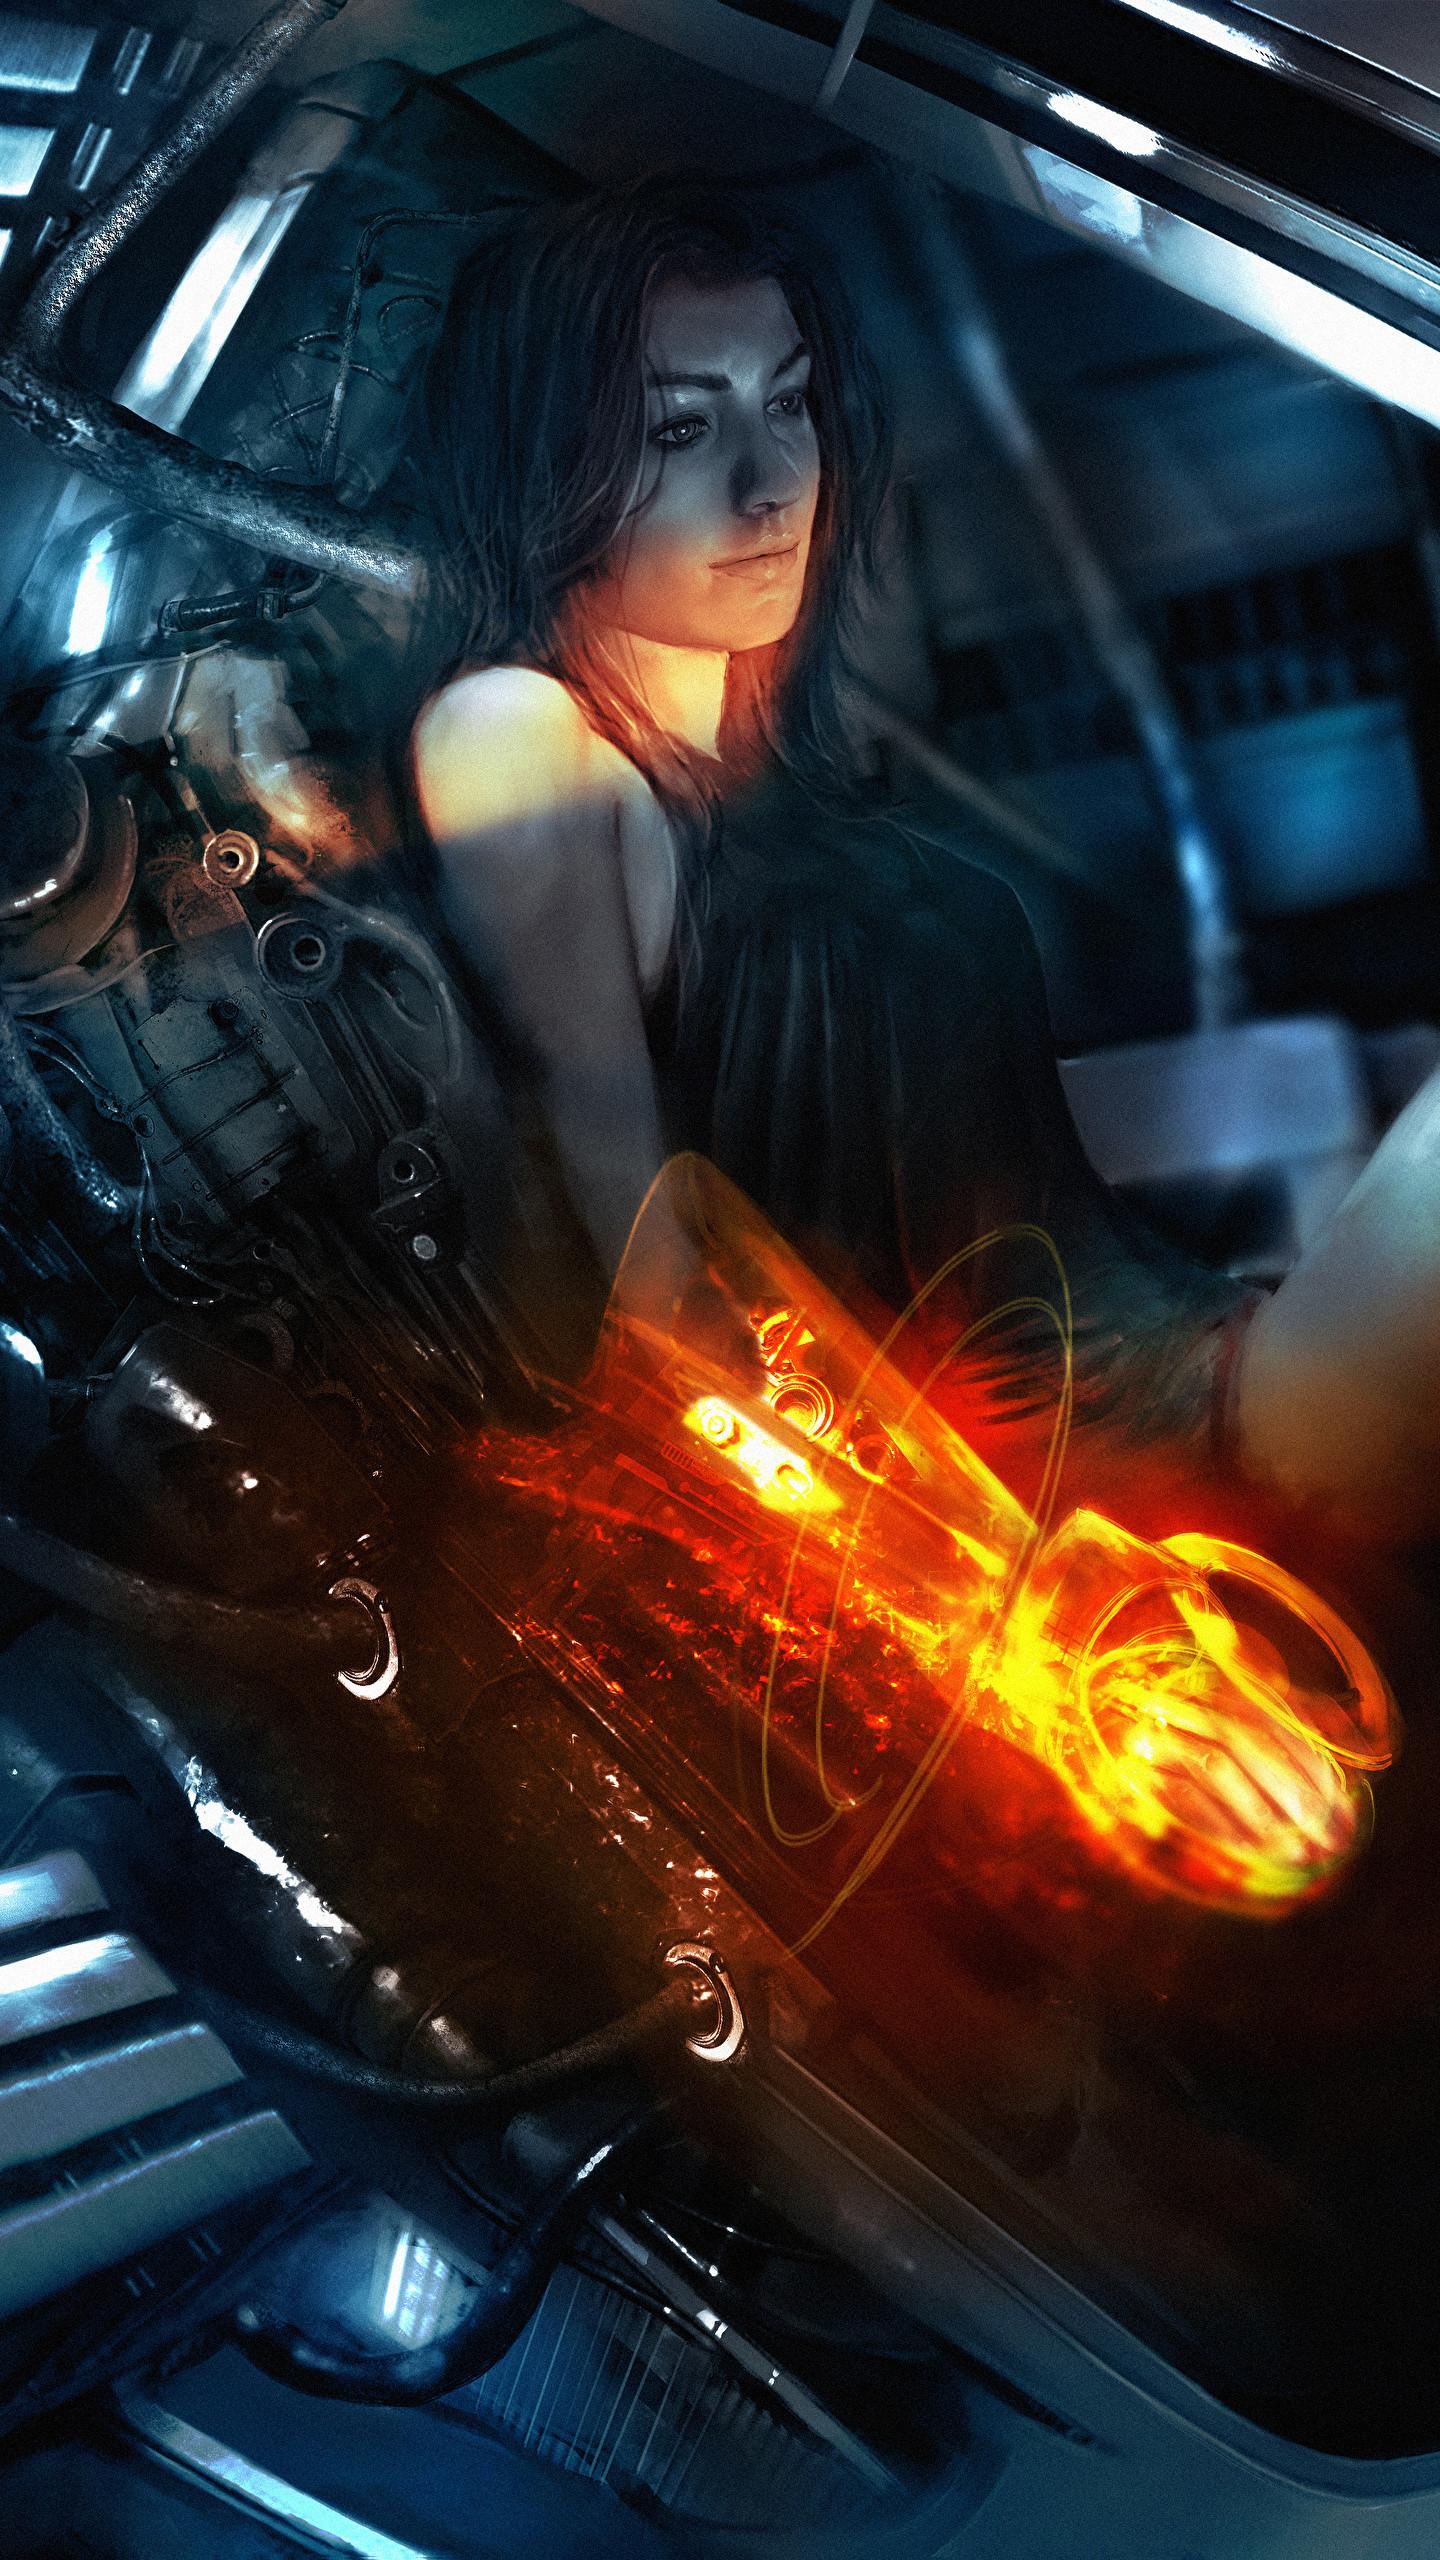 1440 x 2560 · jpeg - Mass Effect Cell Phone Wallpaper : Mass Effect, Video Games Wallpapers ...